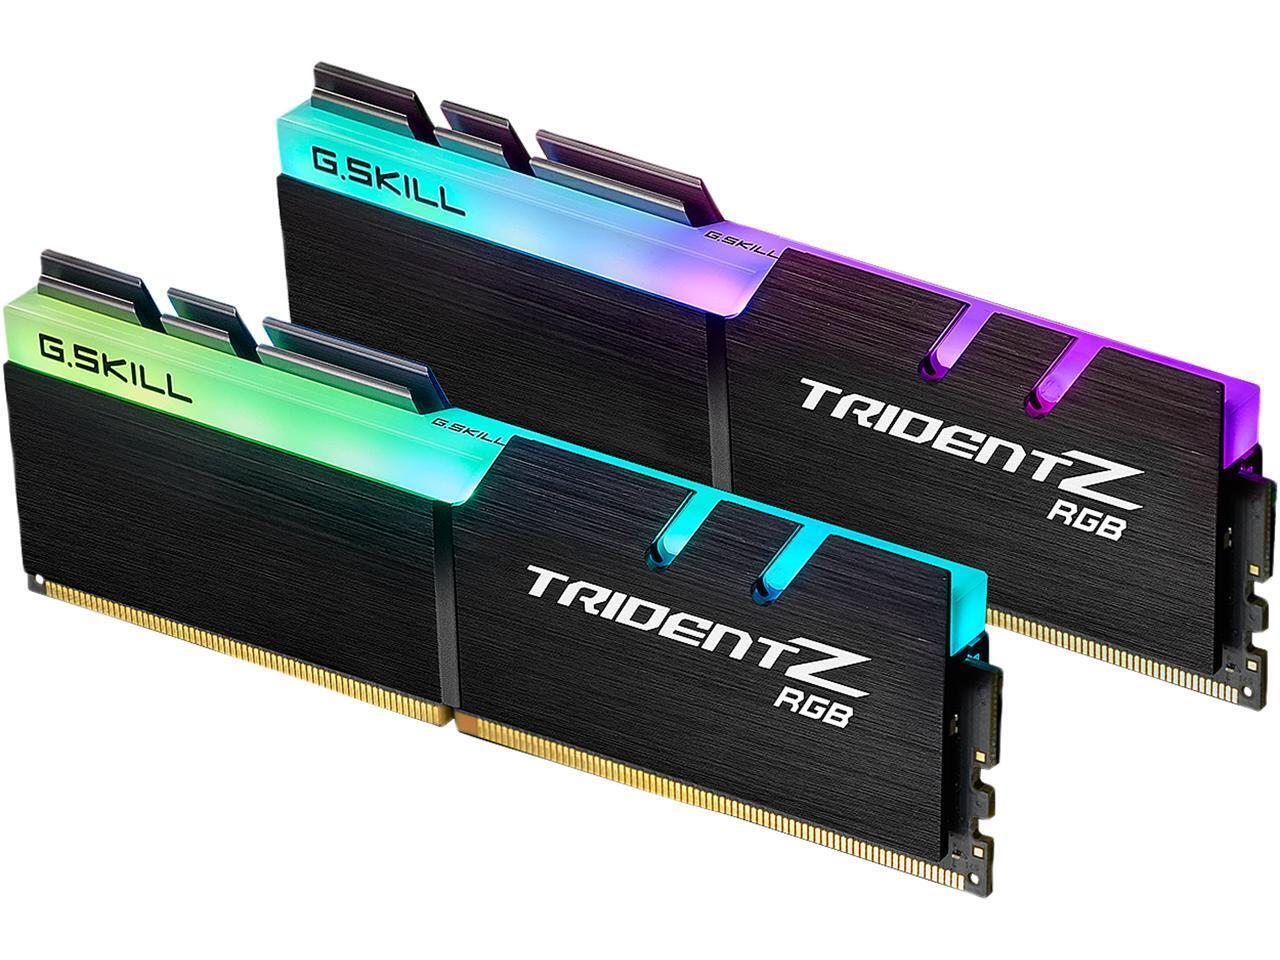 G.SKILL TridentZ RGB Series 64GB (2 x 32GB) 288-Pin PC RAM DDR4 2666